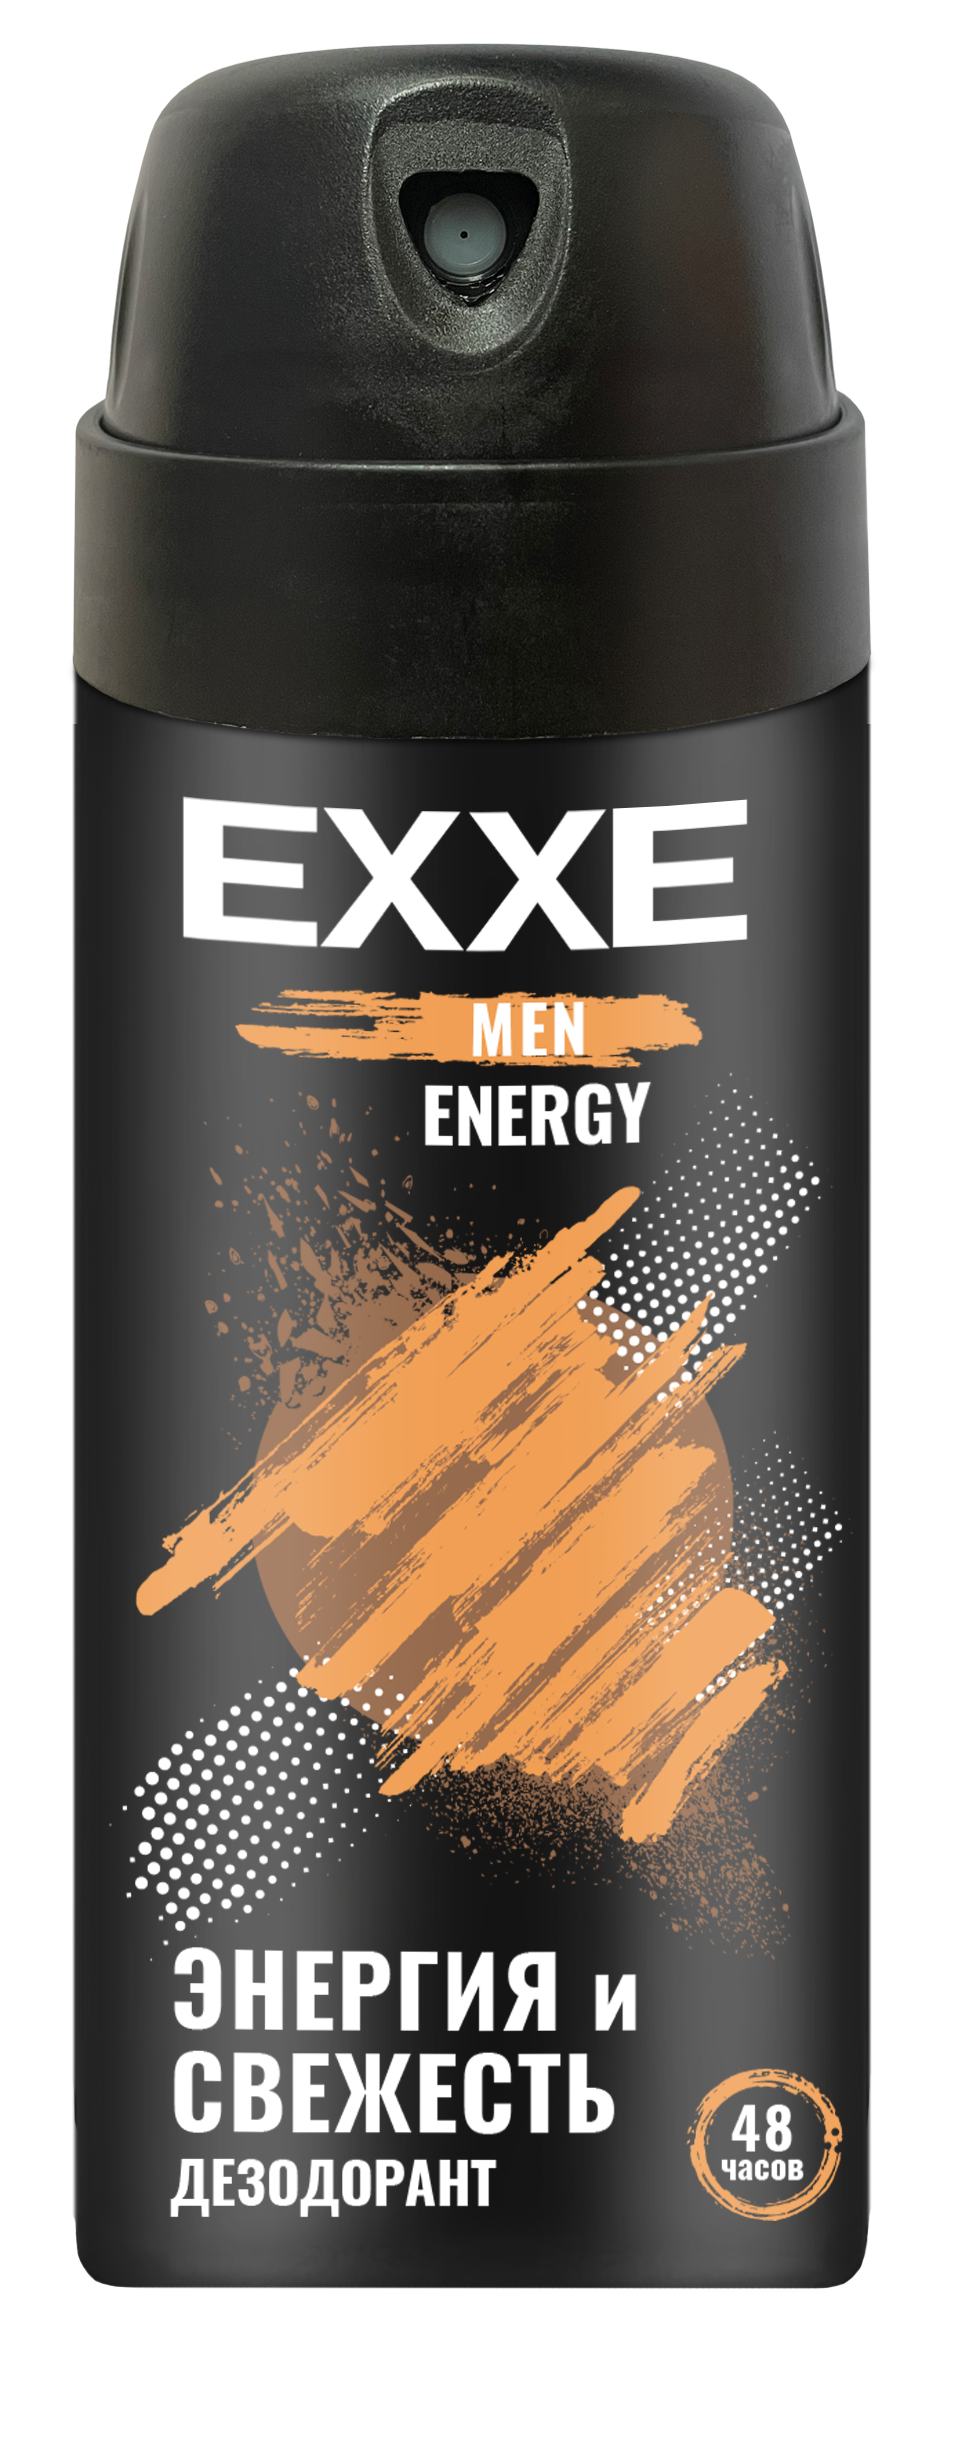 Мужской дезодорант EXXE MEN ENERGY, аэрозоль, 150 мл дезодорант rexona men мужской экстремальная защита аэрозоль 150 мл